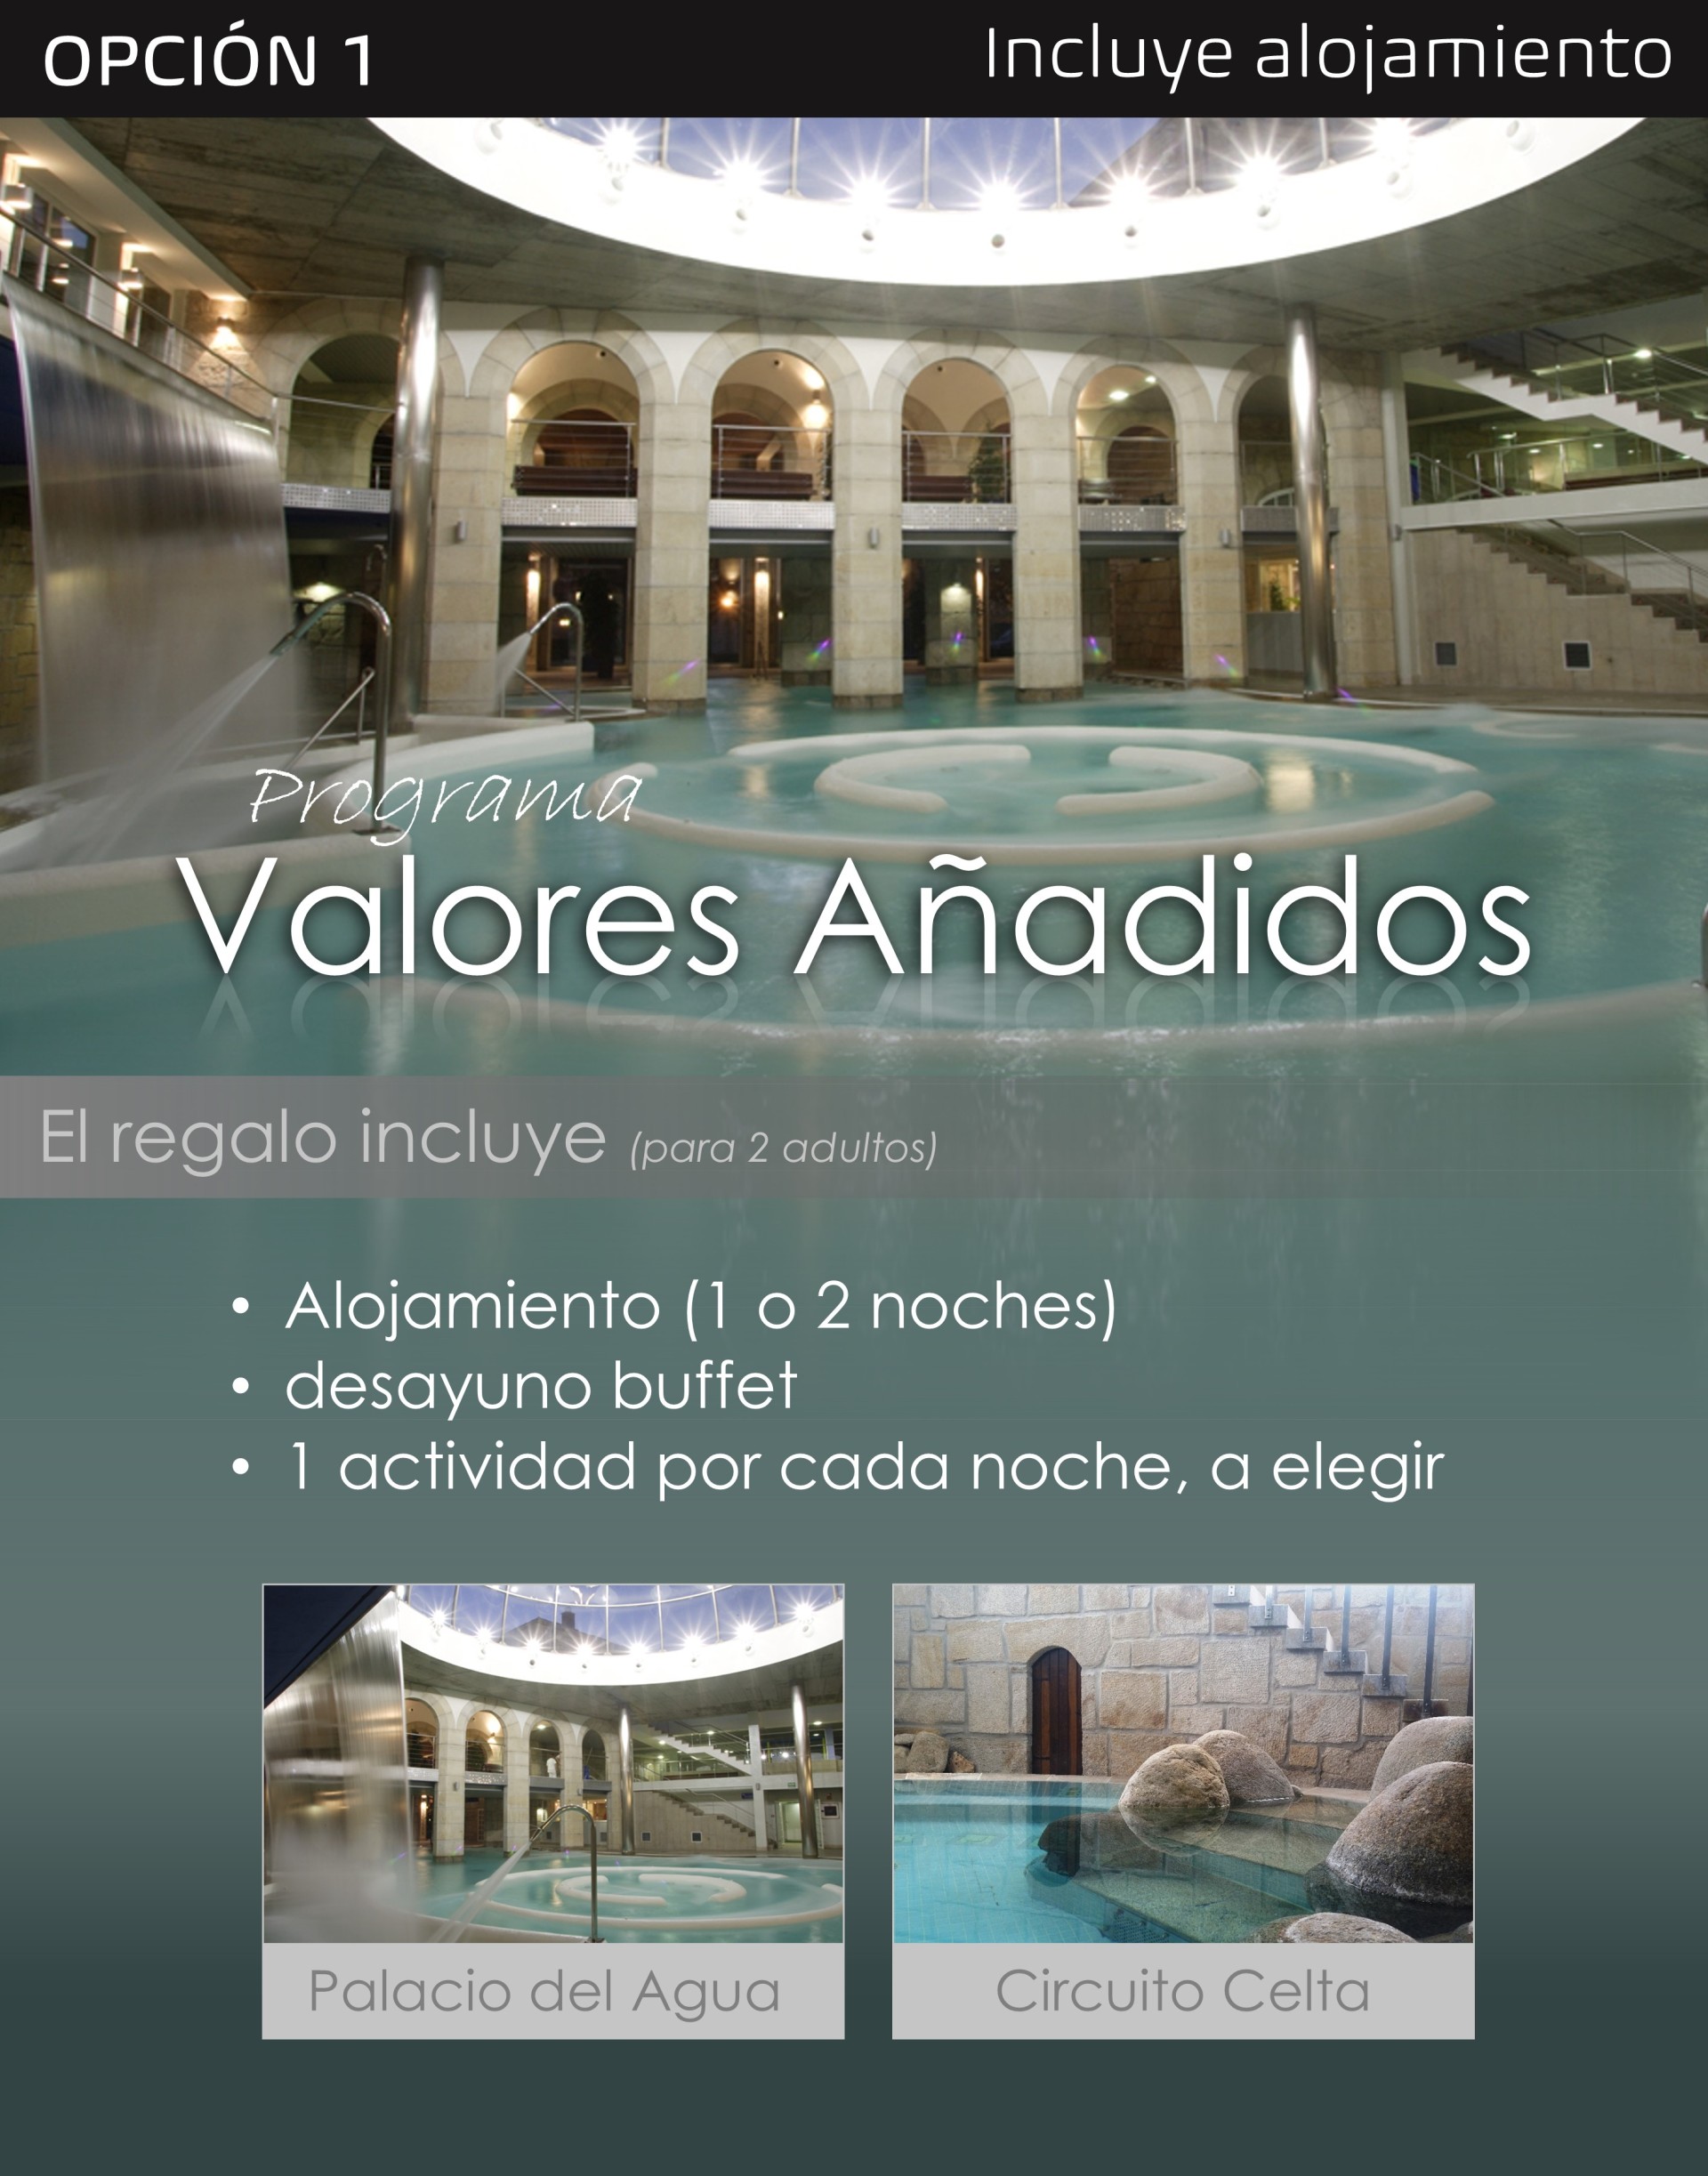 Balneario de Mondariz. Galicia - Golf, Balneario, Palacio del Agua - Spa. Reservas ofertas online